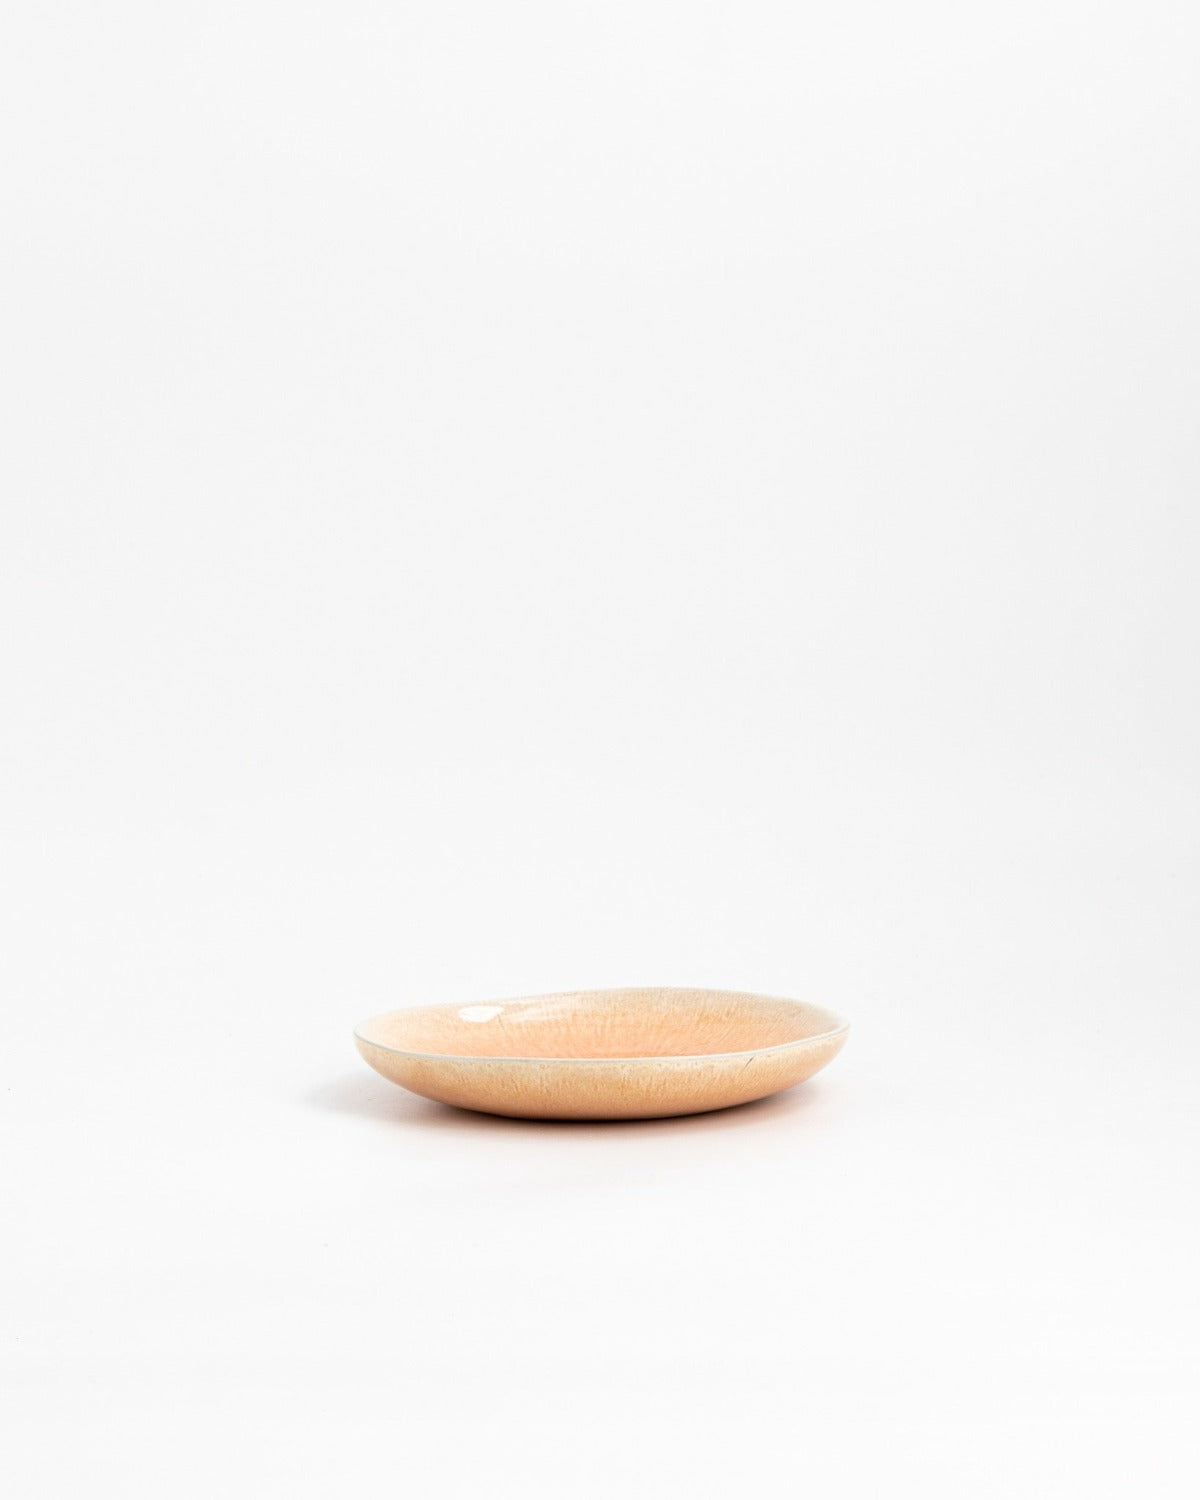 Farrago Small Plate Orange/15cm 